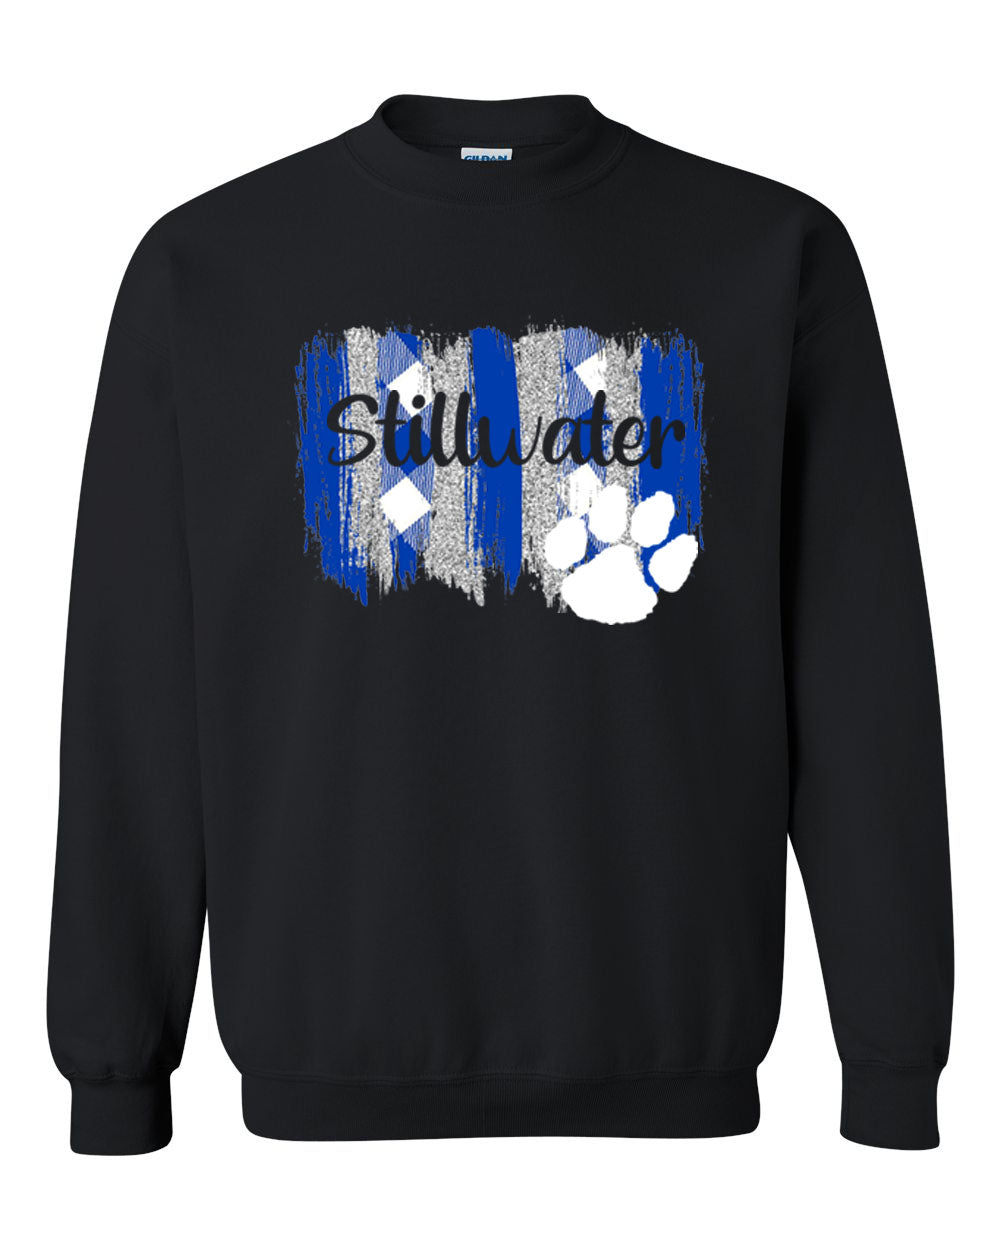 Stillwater Design 5 non hooded sweatshirt